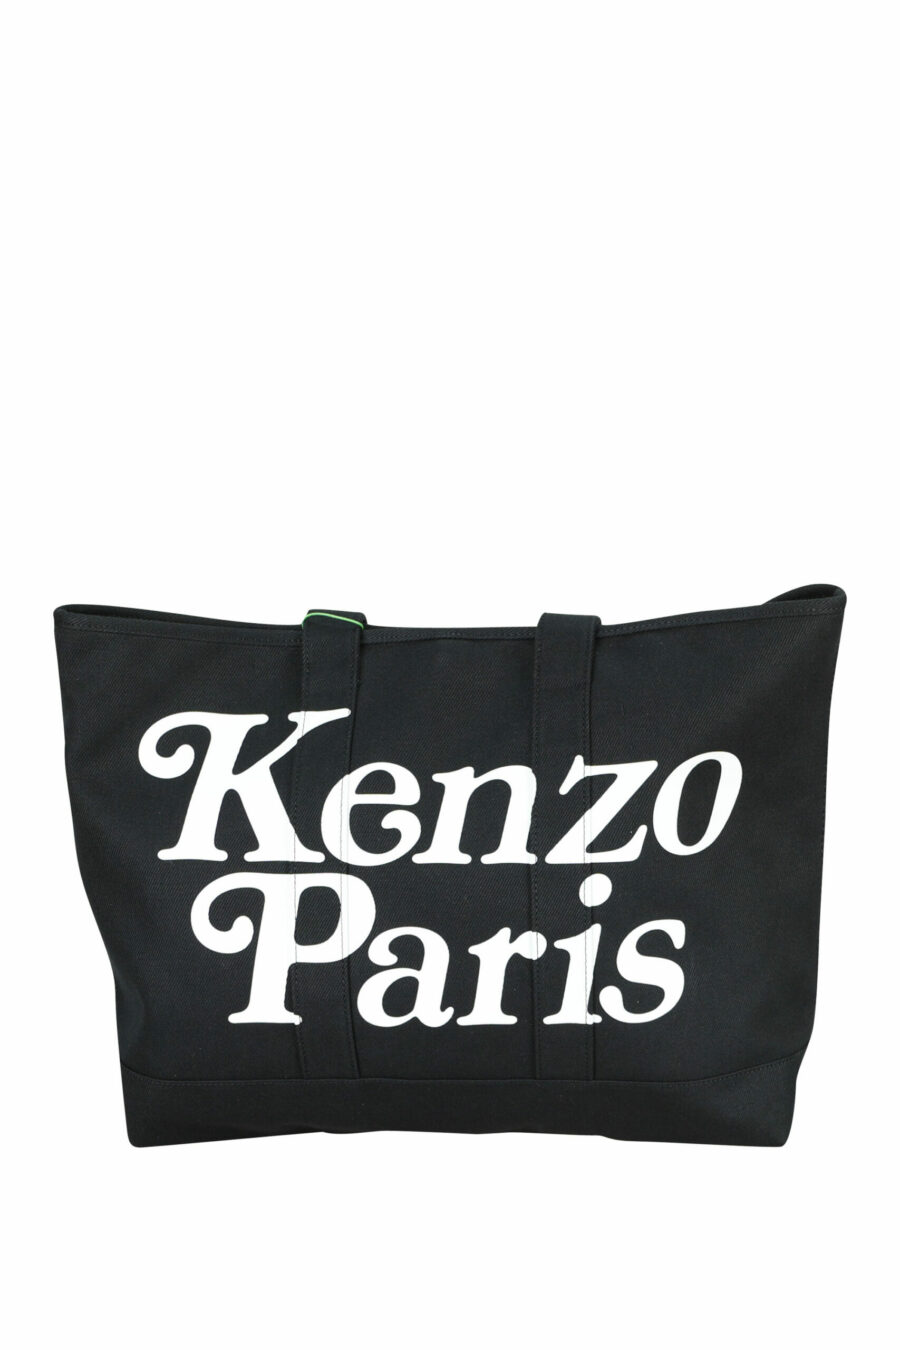 Tote bag negro con maxilogo "kenzo utility" - 3612230581388 scaled